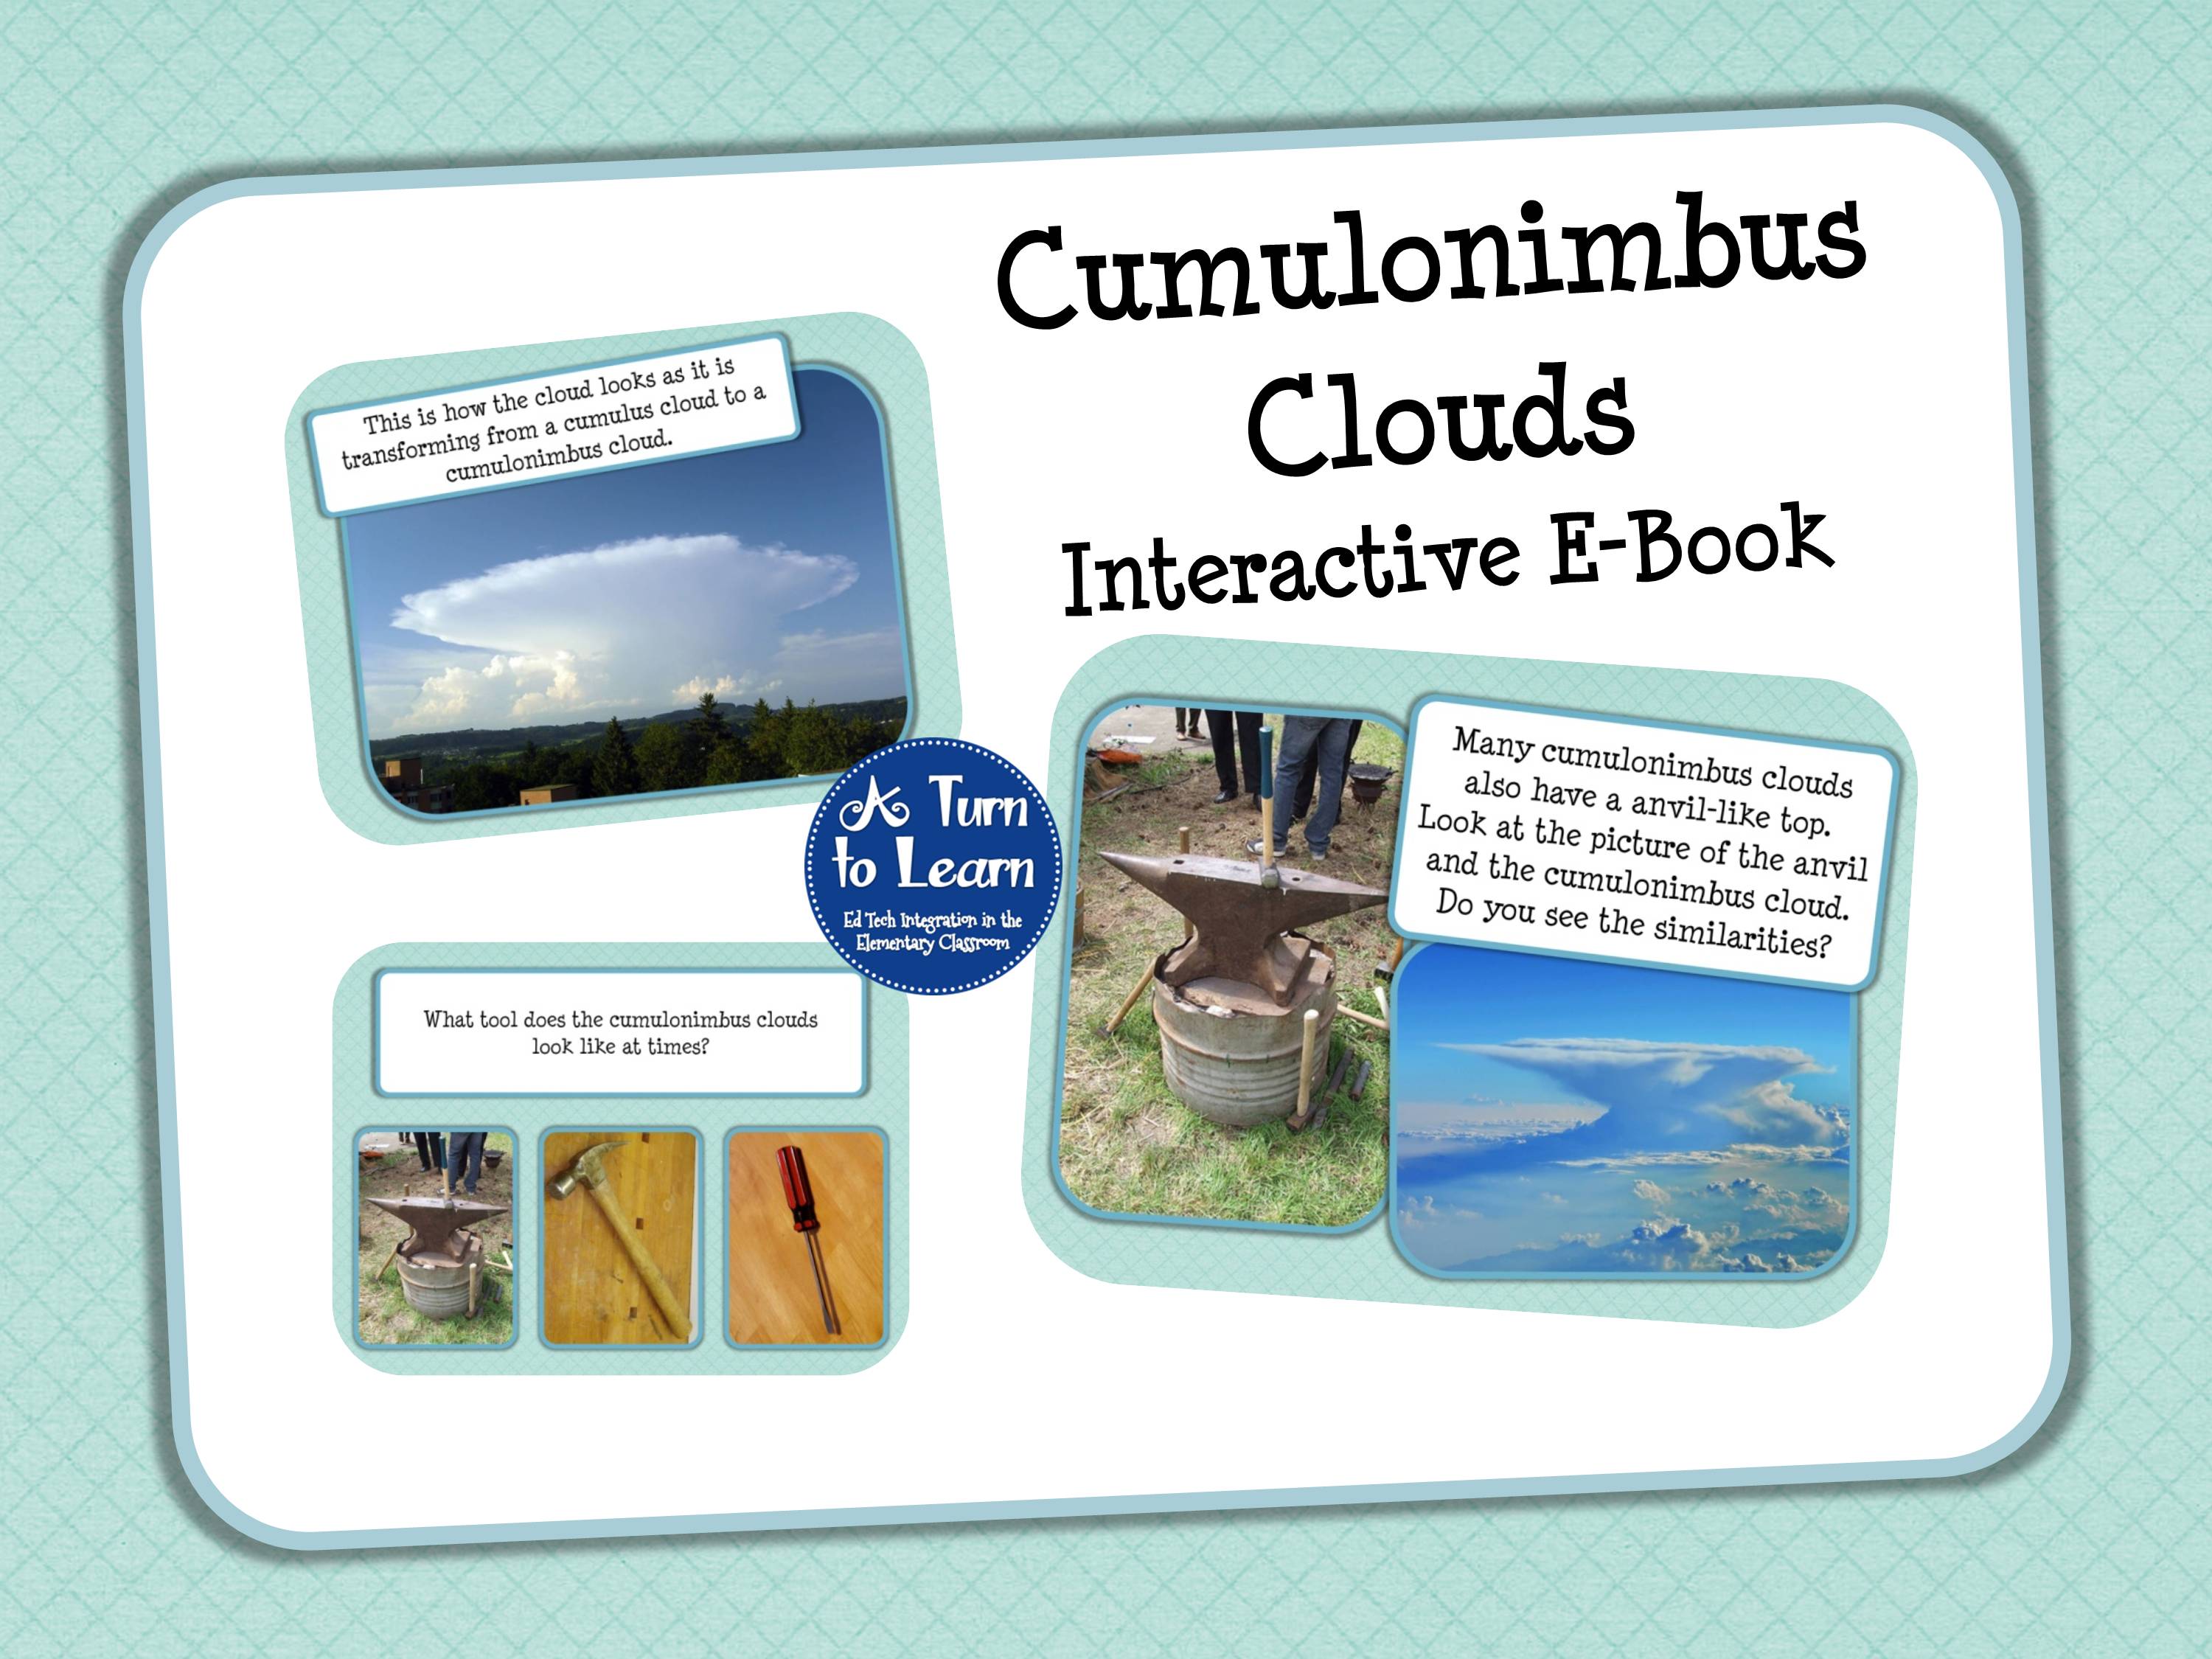 Cumulonimbus Clouds E-Book and Smartboard Game